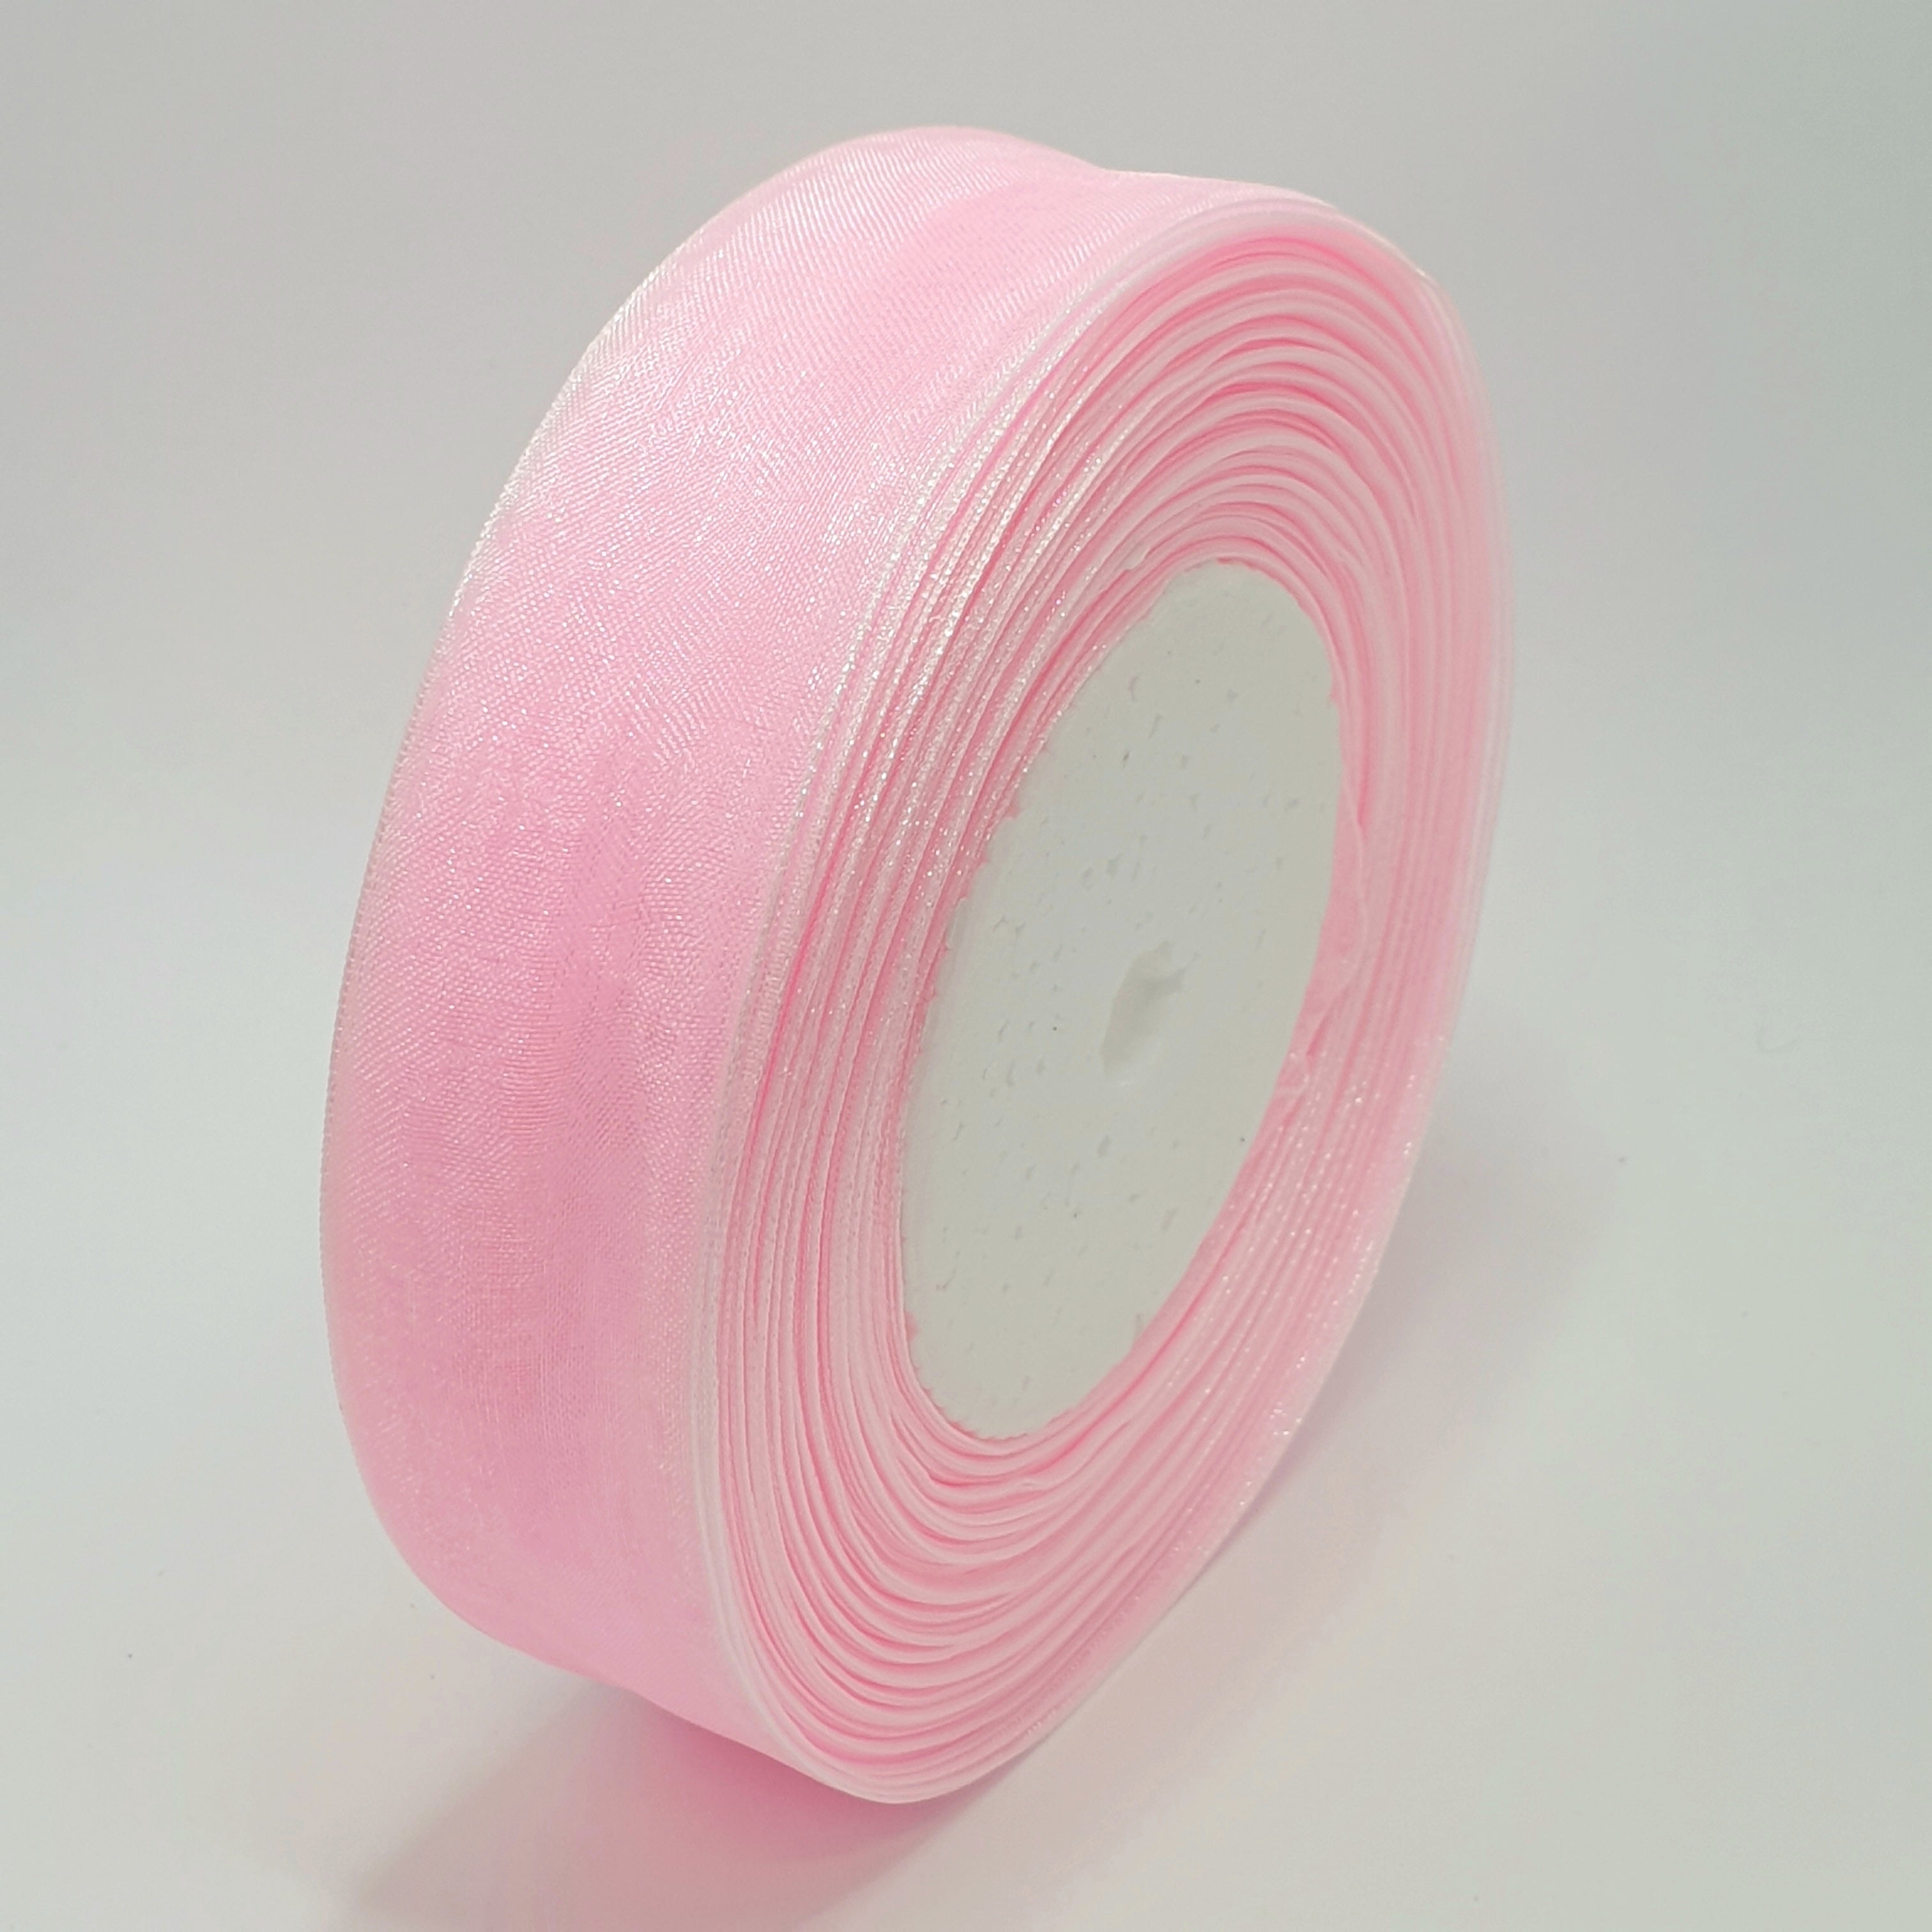 MajorCrafts 25mm 45metres Sheer Organza Fabric Ribbon Roll Pink Shade R1043